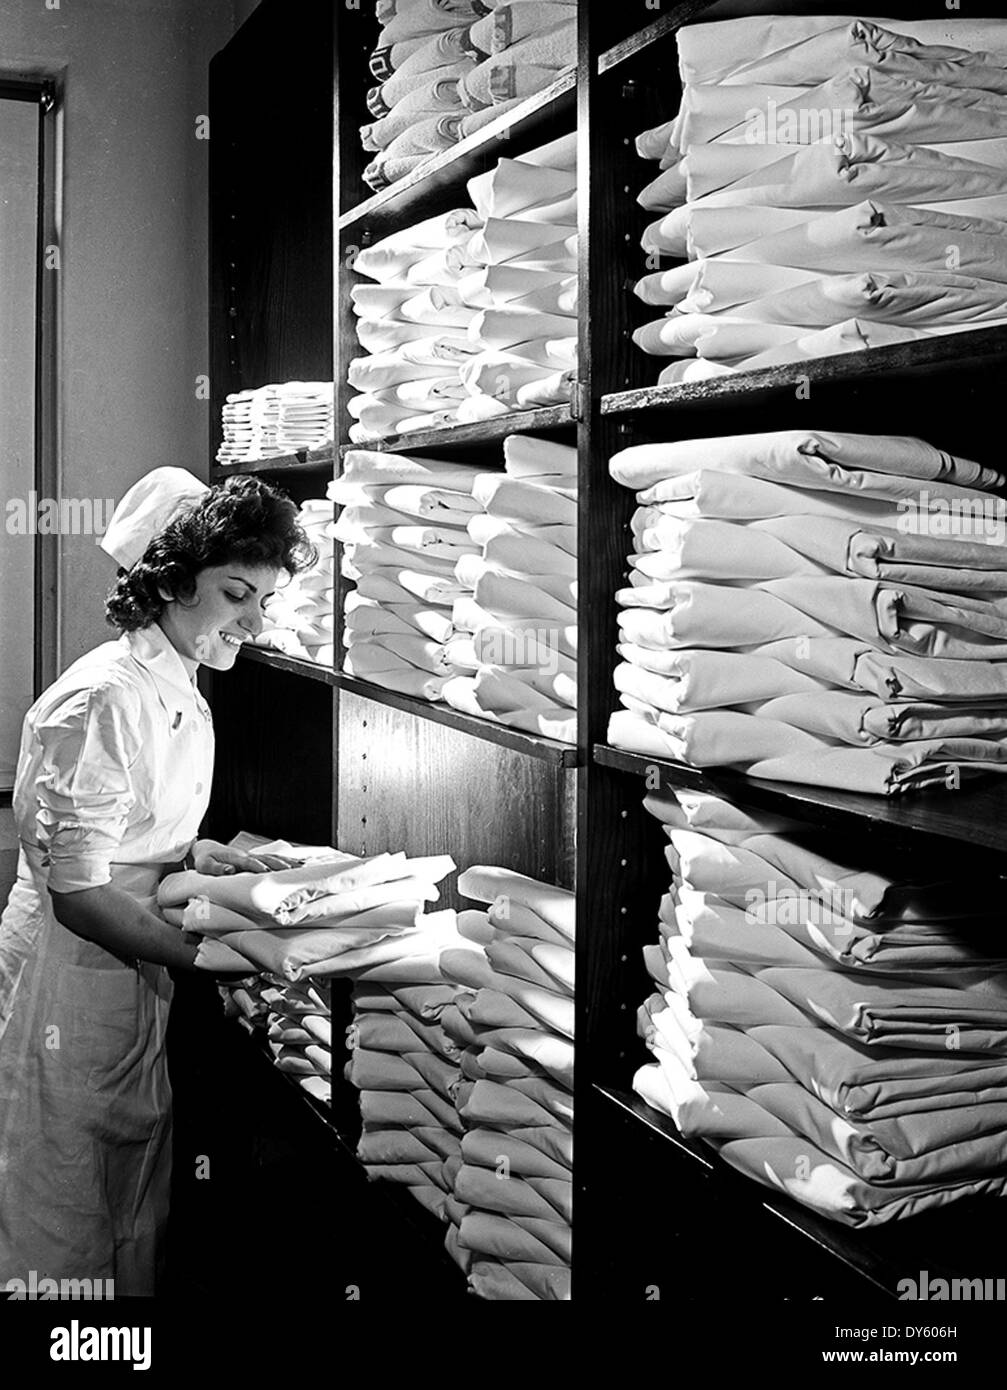 Krankenschwester im Krankenhaus Wäsche Schrank, Pepperell produzierendes  Unternehmen] Stockfotografie - Alamy